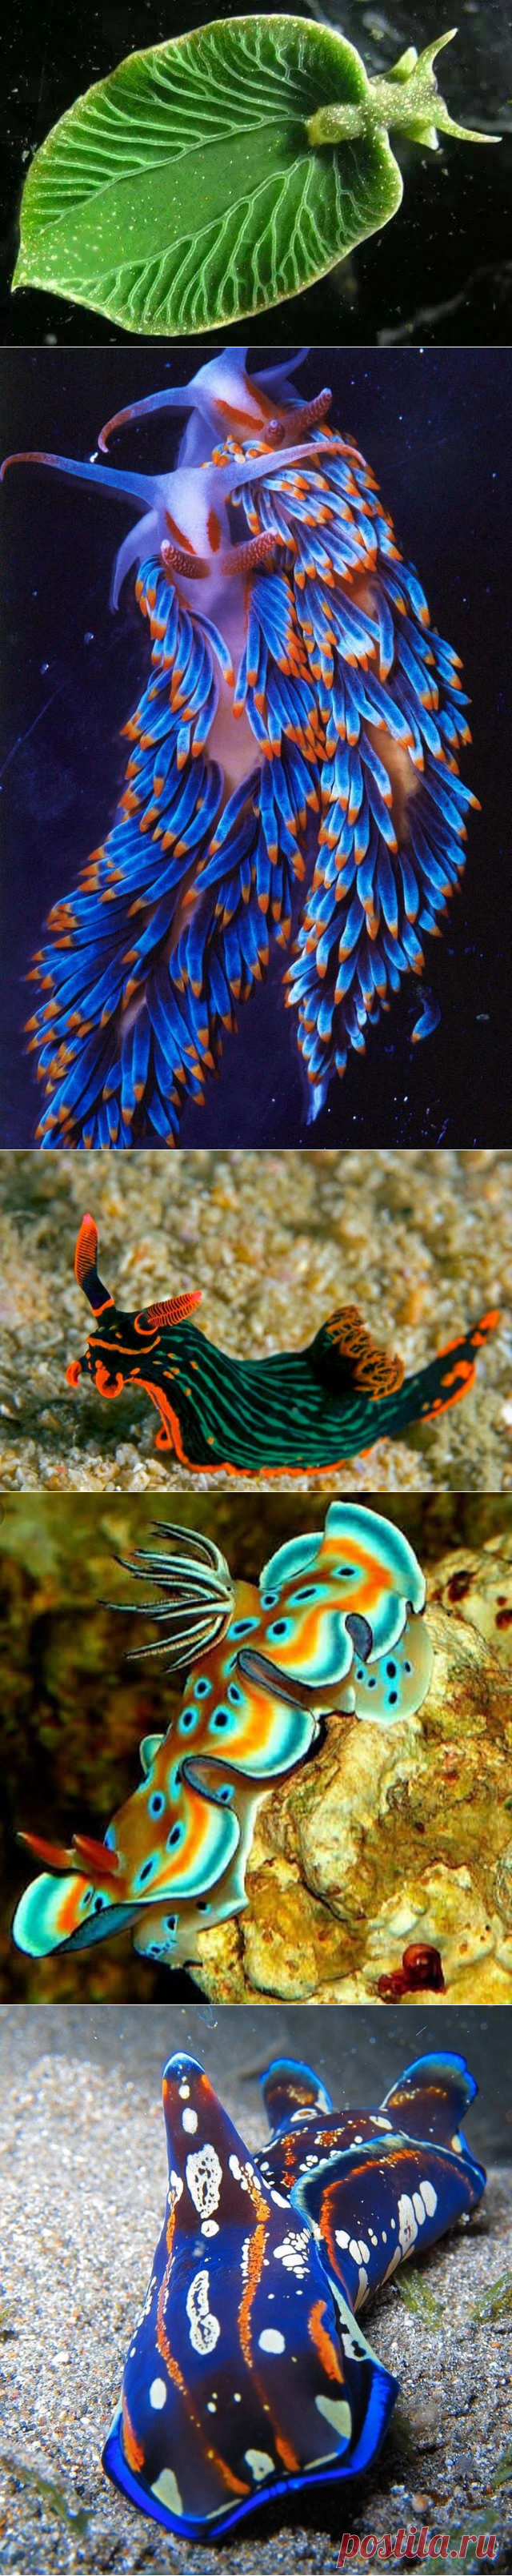 Морские бабочки — самые красивые обитатели морских глубин